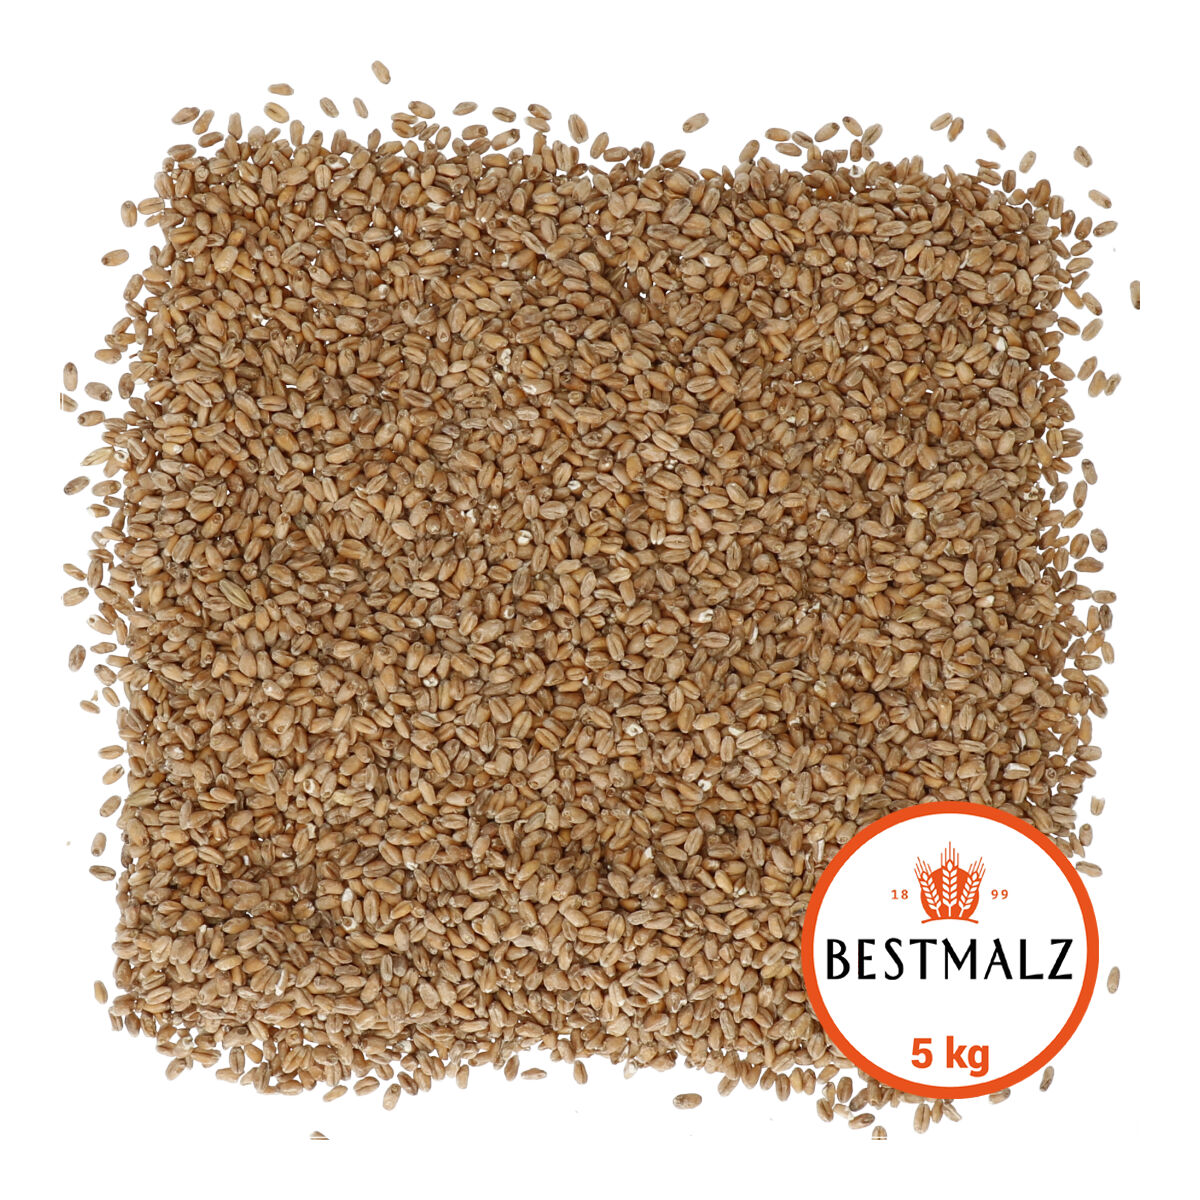 Bestmalz Wheat 5 kg